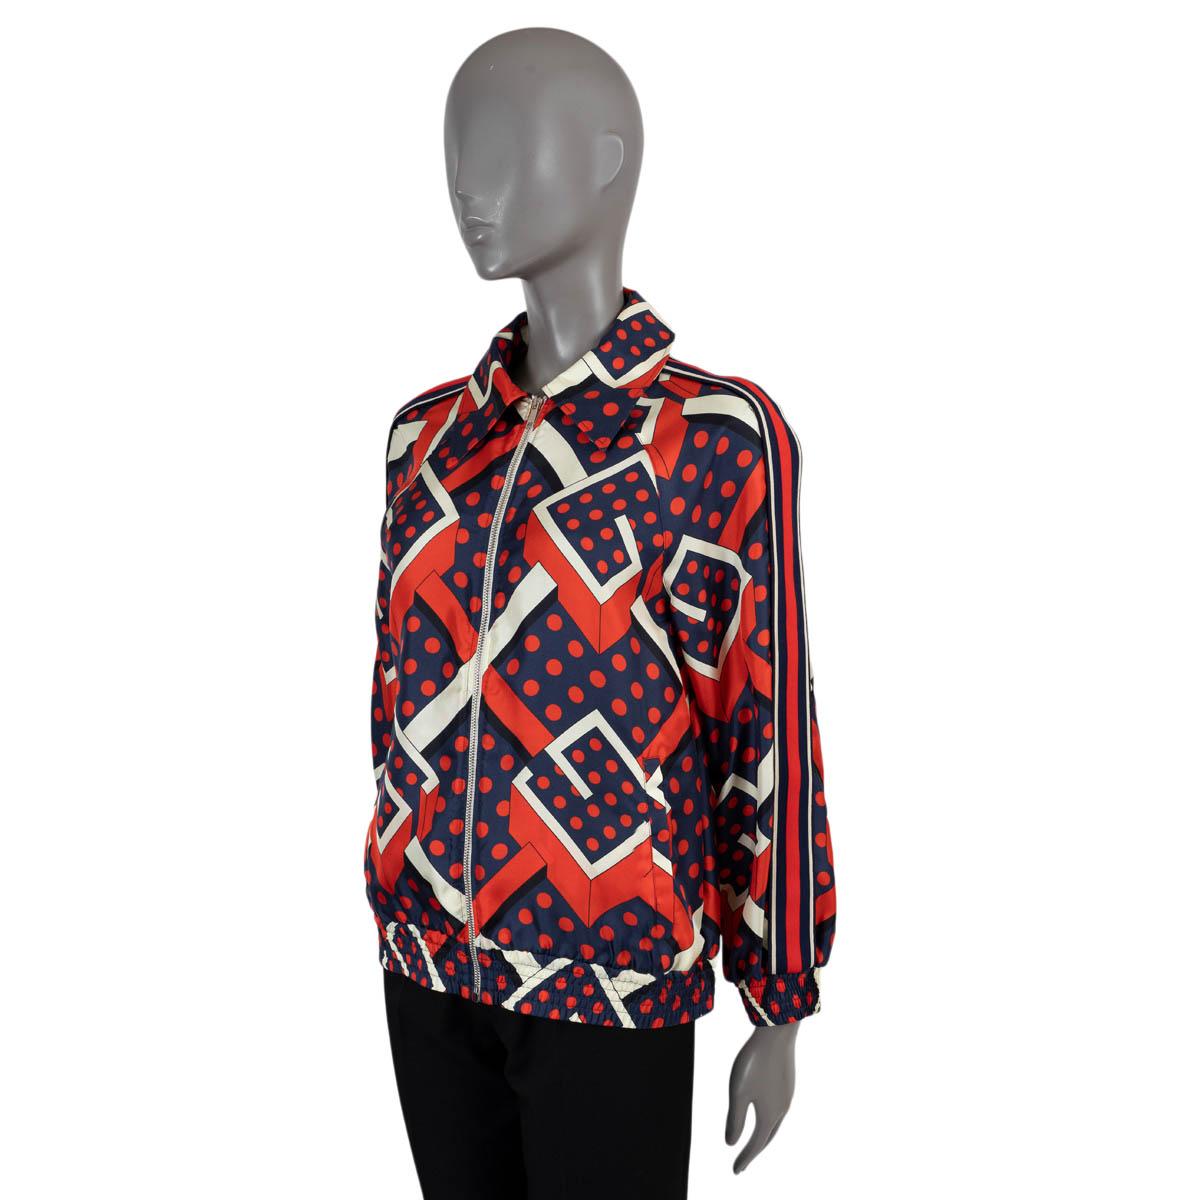 100% authentische Gucci G Dot Labyrinth Print Jacke aus roter, marineblauer und weißer Seide (100%). Mit spitzem Kragen, Webstreifen an den Ärmeln, elastischen Manschetten und zwei schrägen Taschen. Wurde getragen und ist in ausgezeichnetem